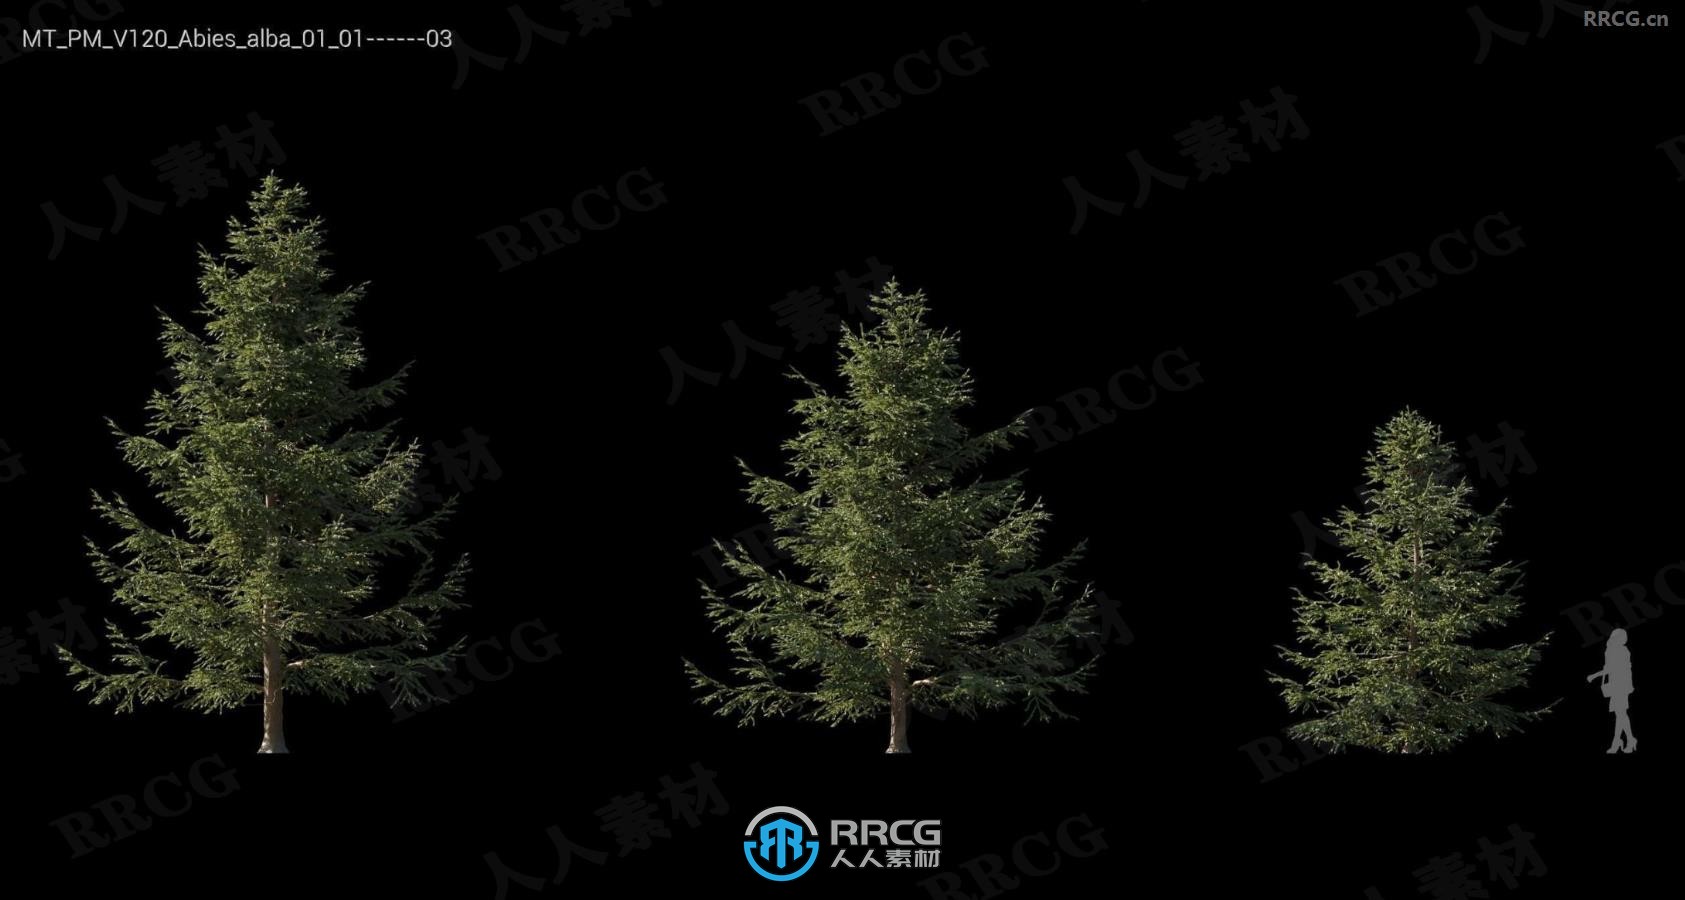 银冷杉瞻博树木格松比利牛斯橡树等树木植物3D模型合集